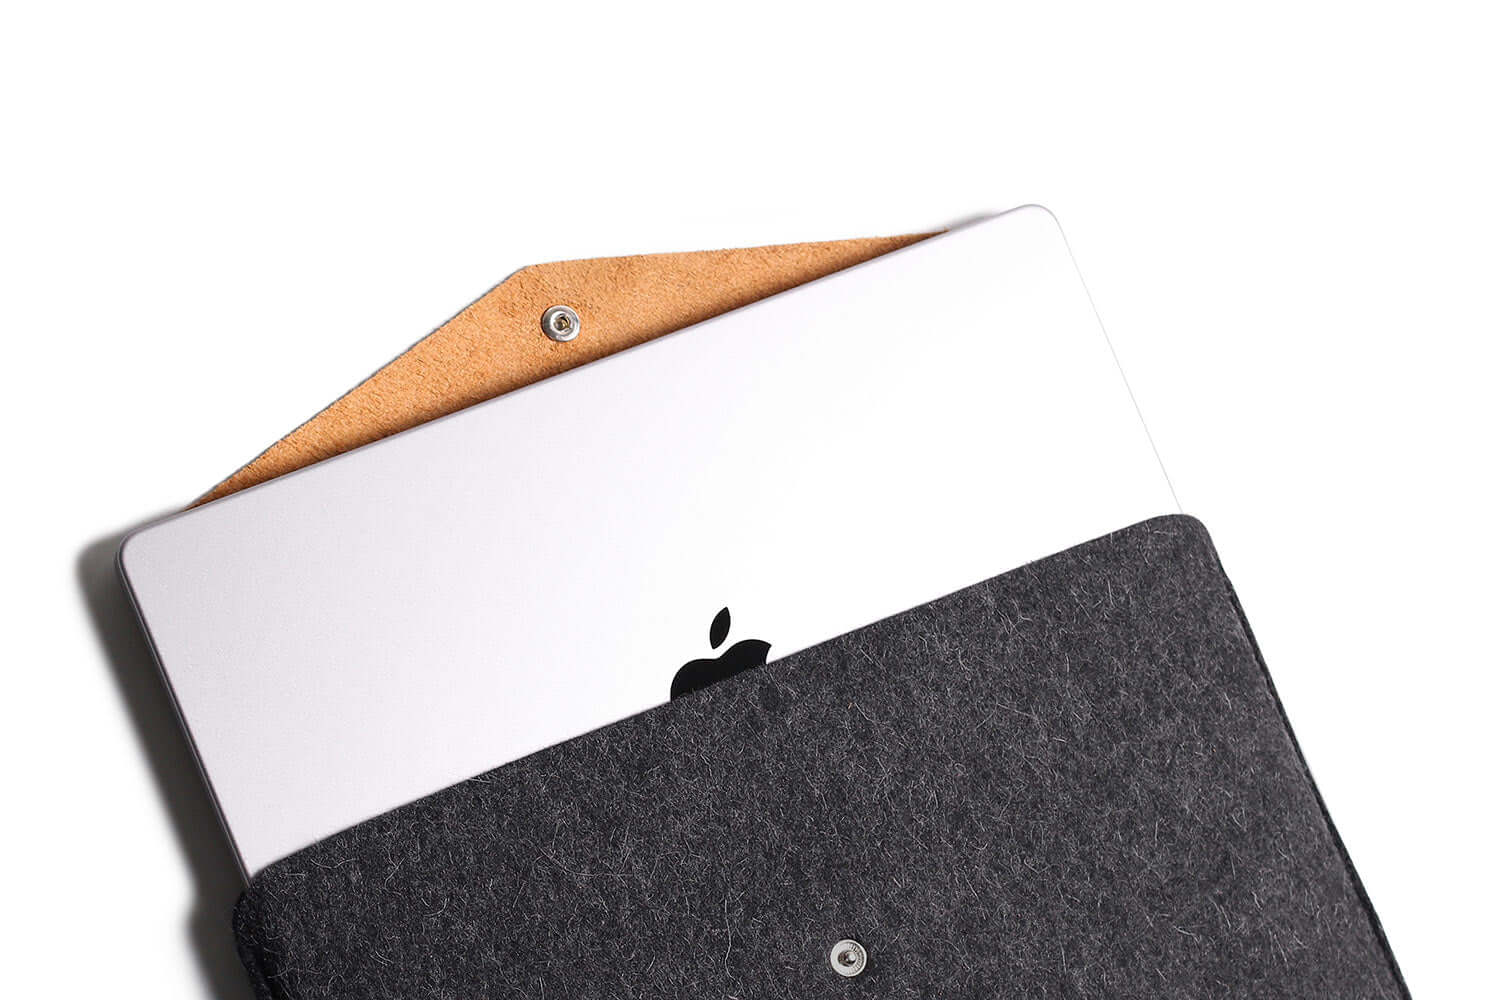 Étui en cuir pour enveloppe Macbook Tan